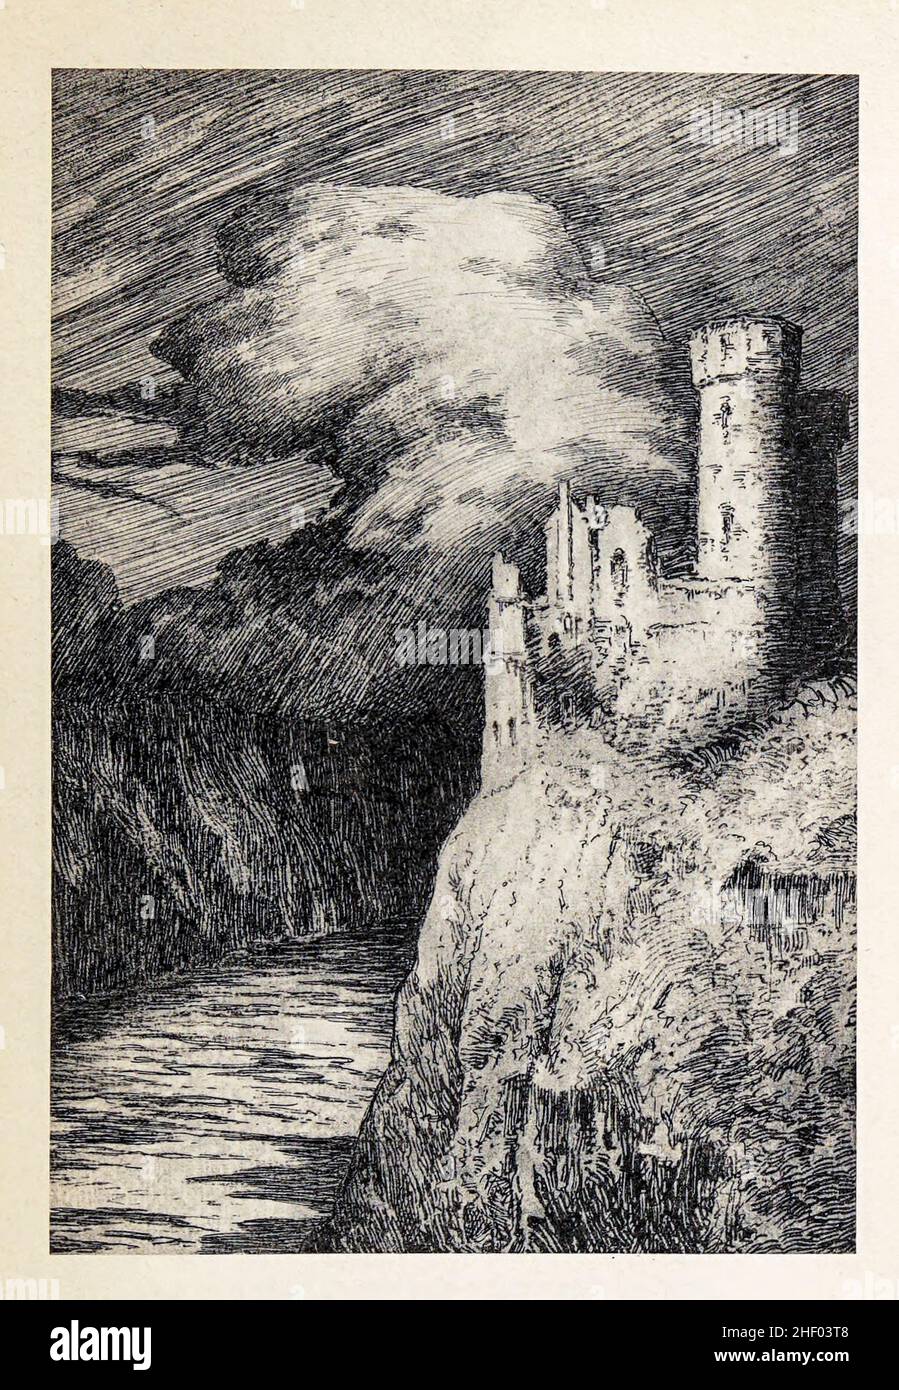 DER MAUSTURM, IN DER NÄHE VON BINGEN von LOUIS WEIRTER, R.B.A. aus dem Mausturm in dem Buch "Hero Tales & Legends of the Rhine" von Lewis Spence, veröffentlicht London : G.G. Harrap 1915 Stockfoto